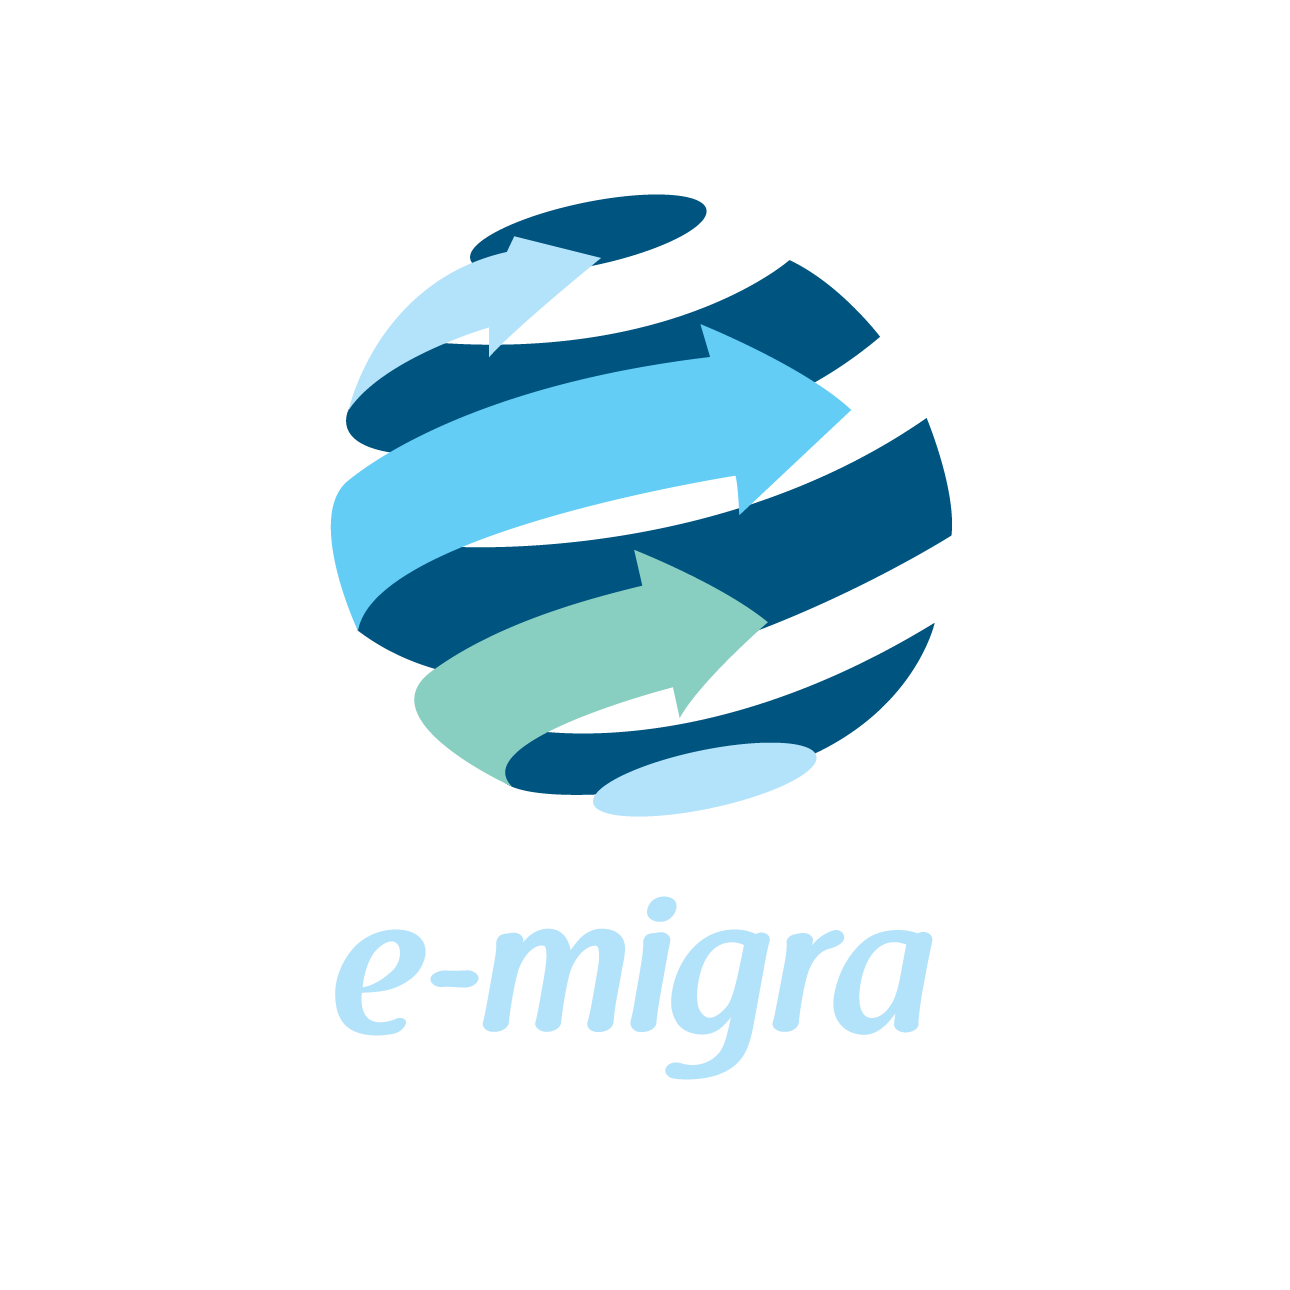 logotipo de e-migra